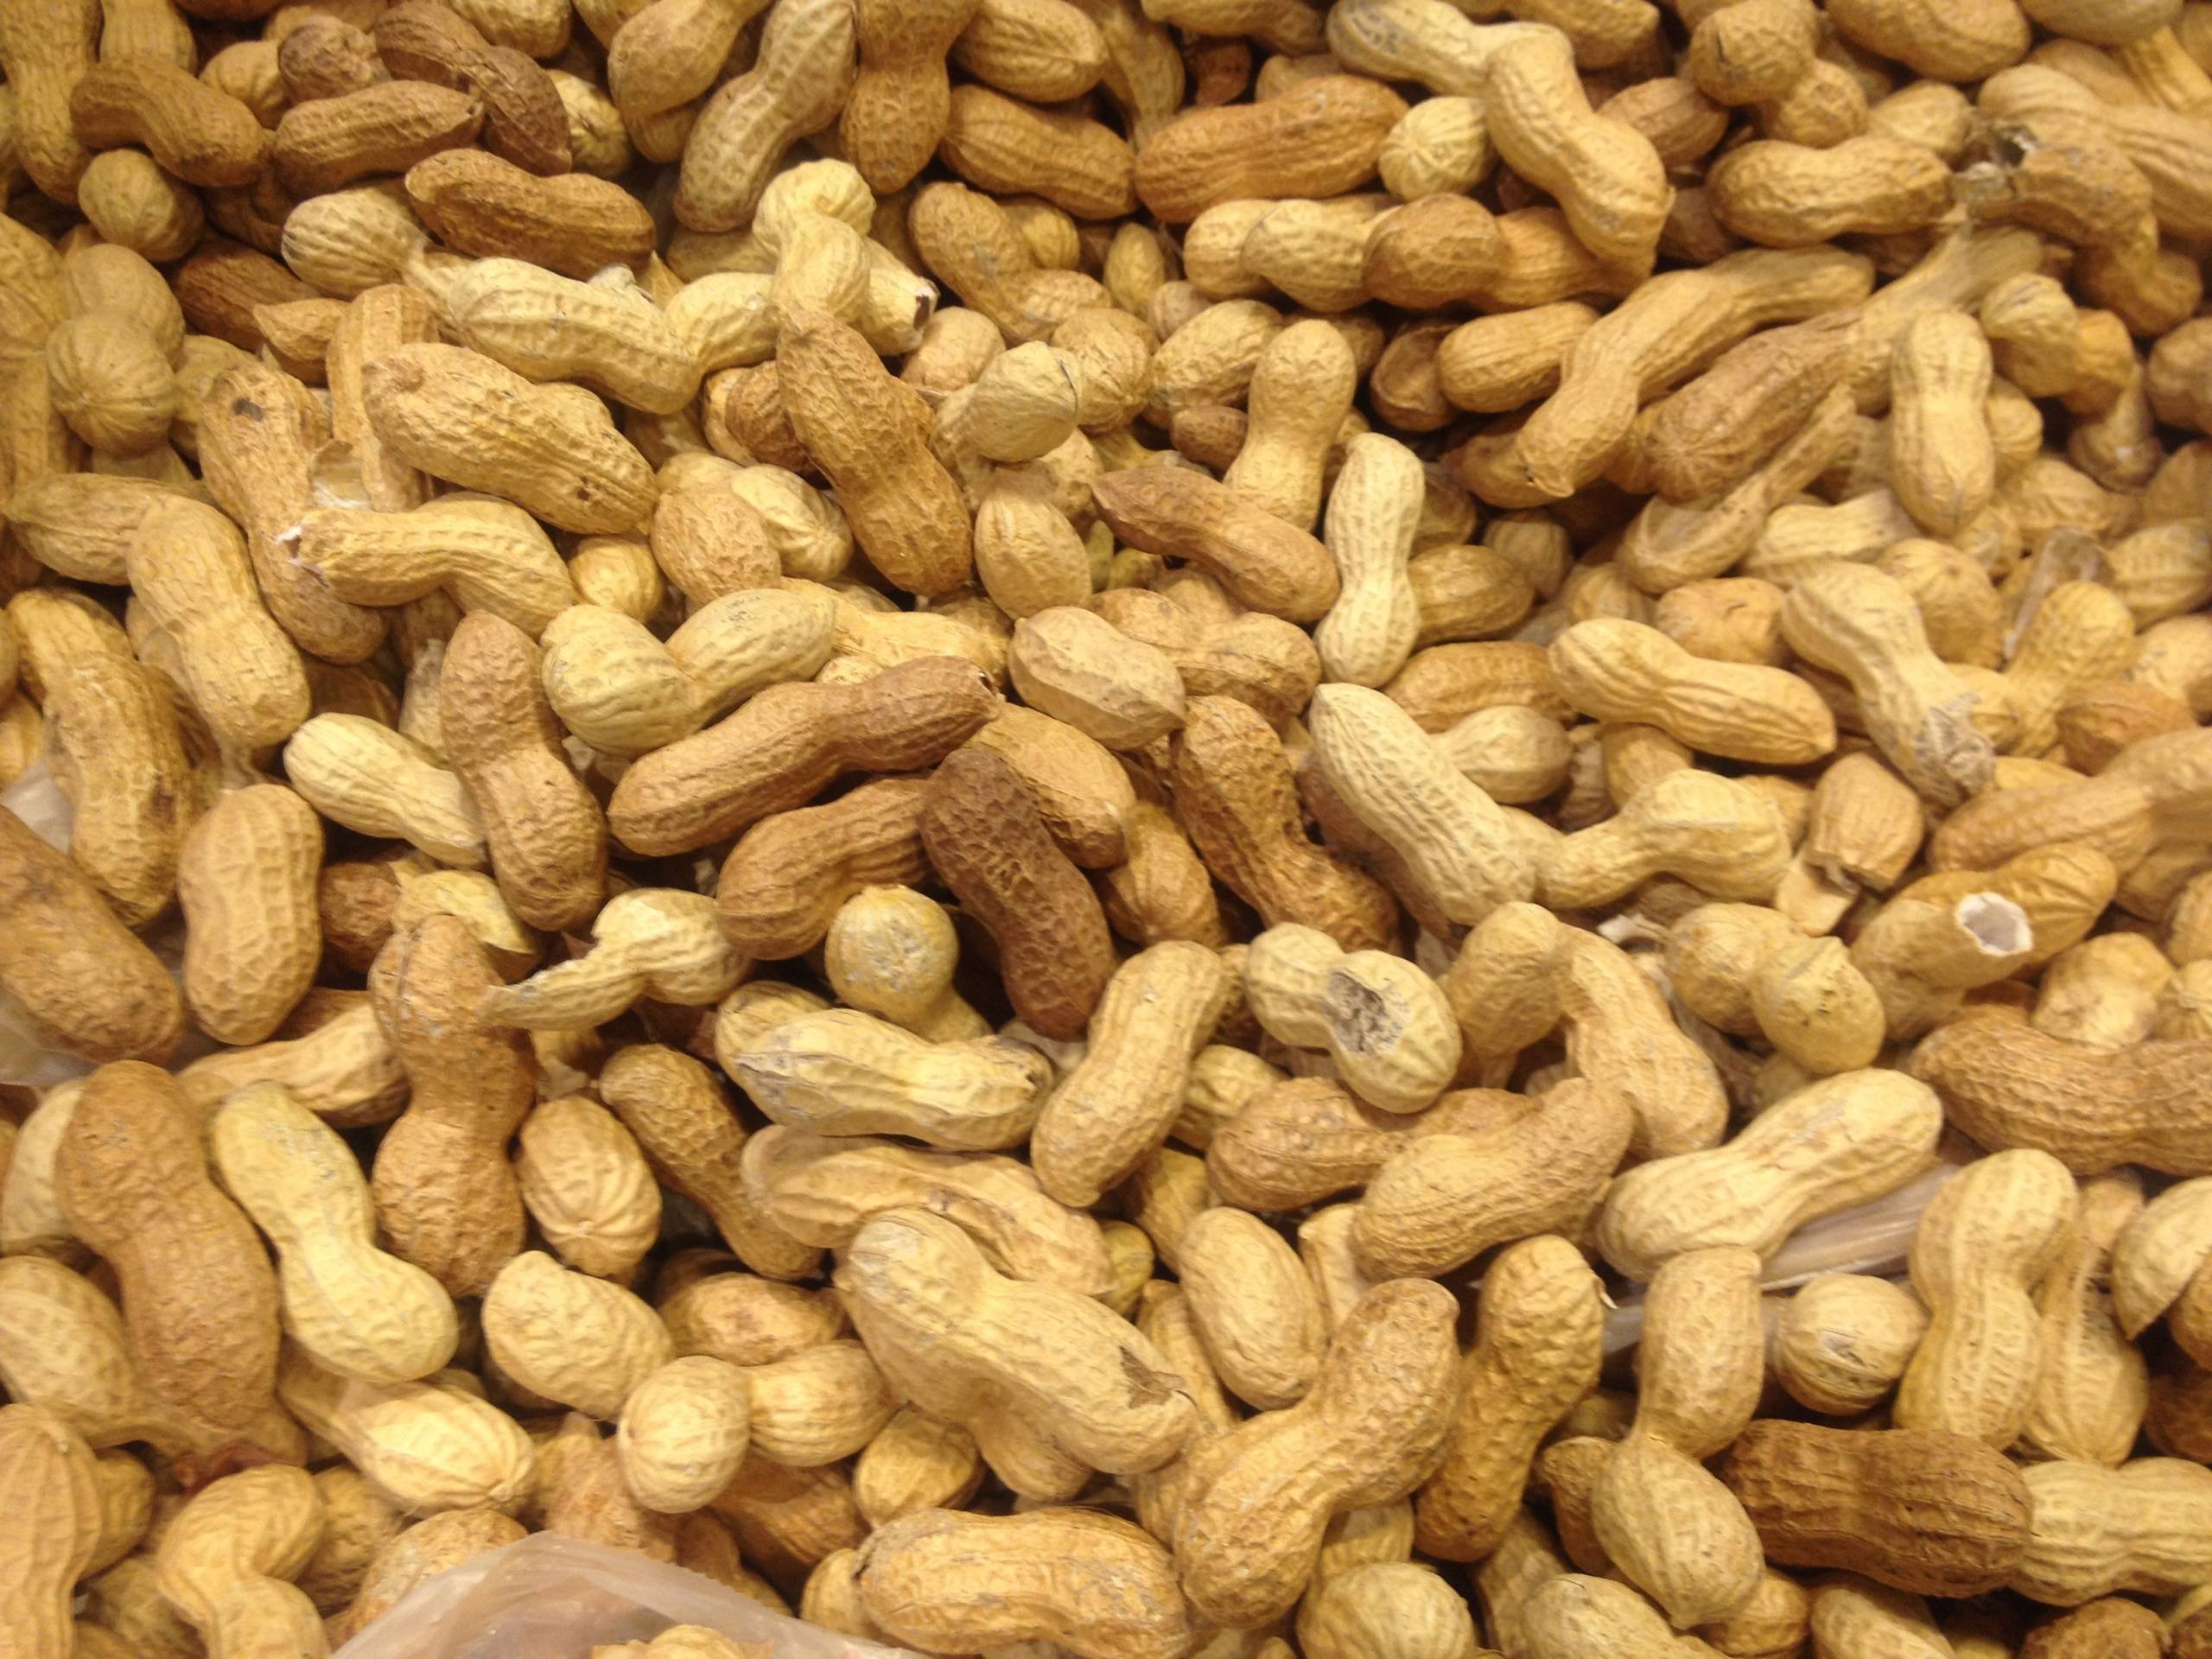 Nuts арахис. Земляной орех арахис. Арахис Peanuts. Китайский арахис. Арахисовые орешки.